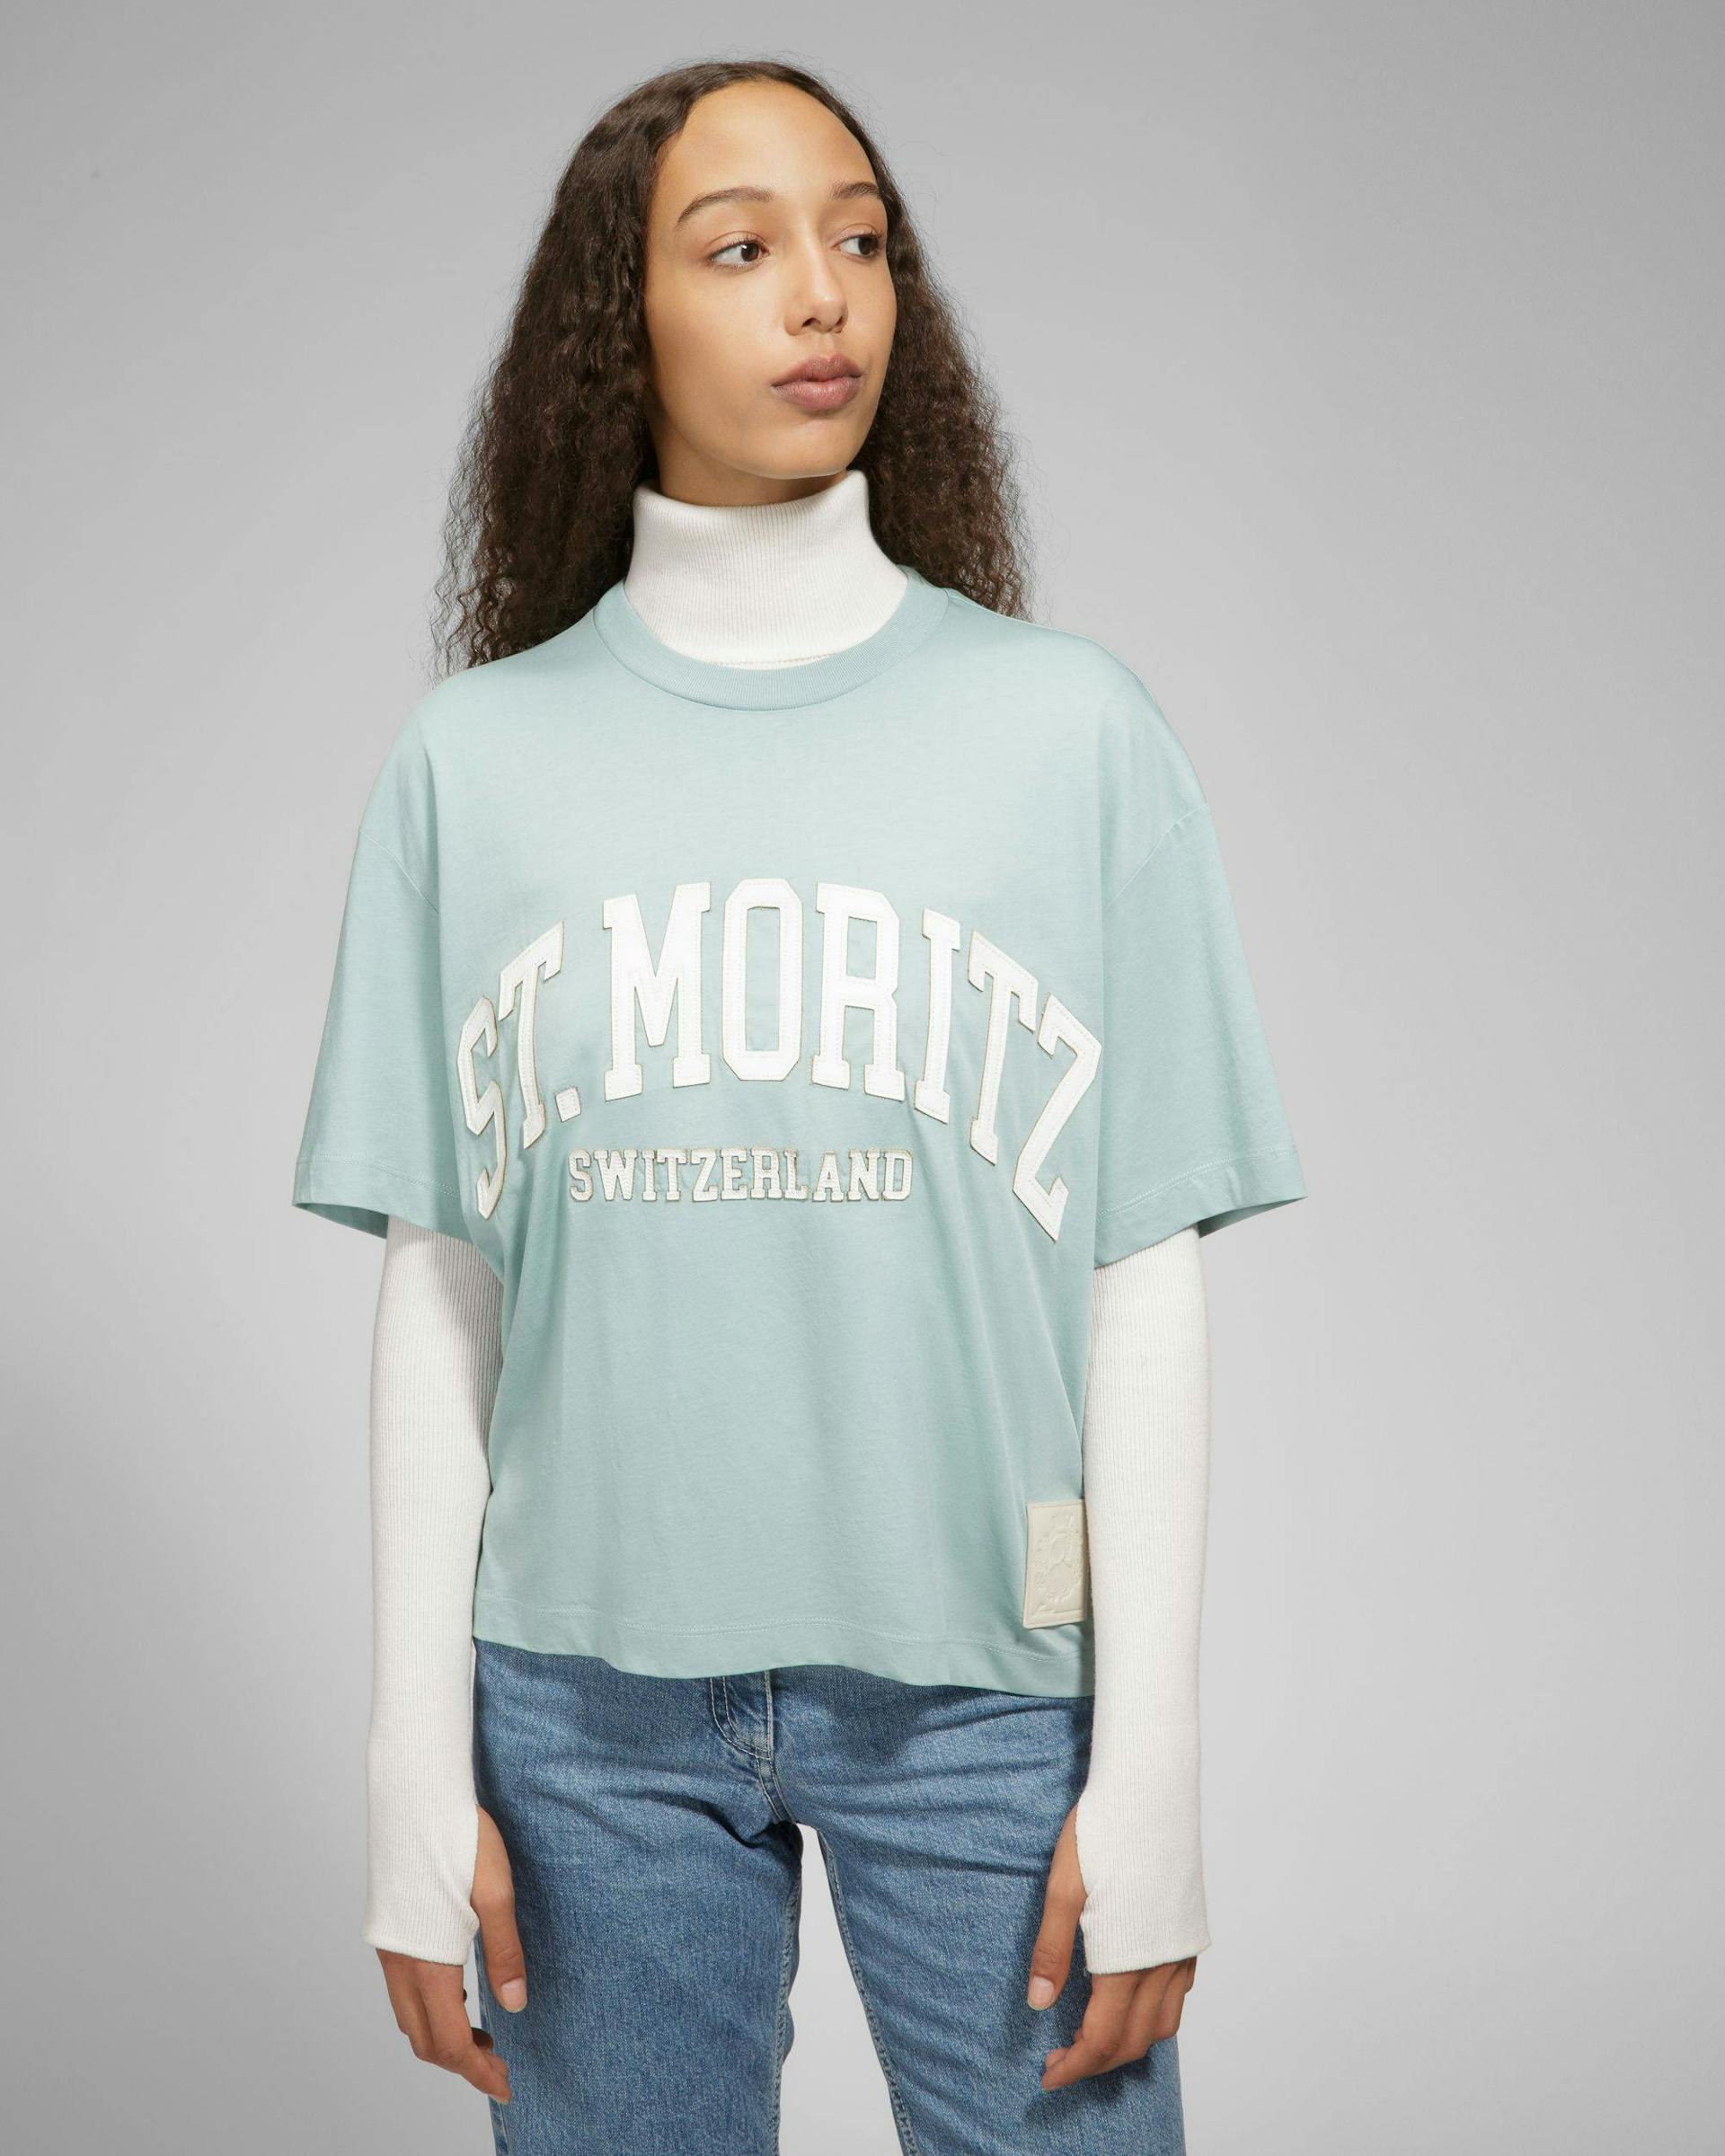 St Moritz T-Shirt - Men's - Bally - 06